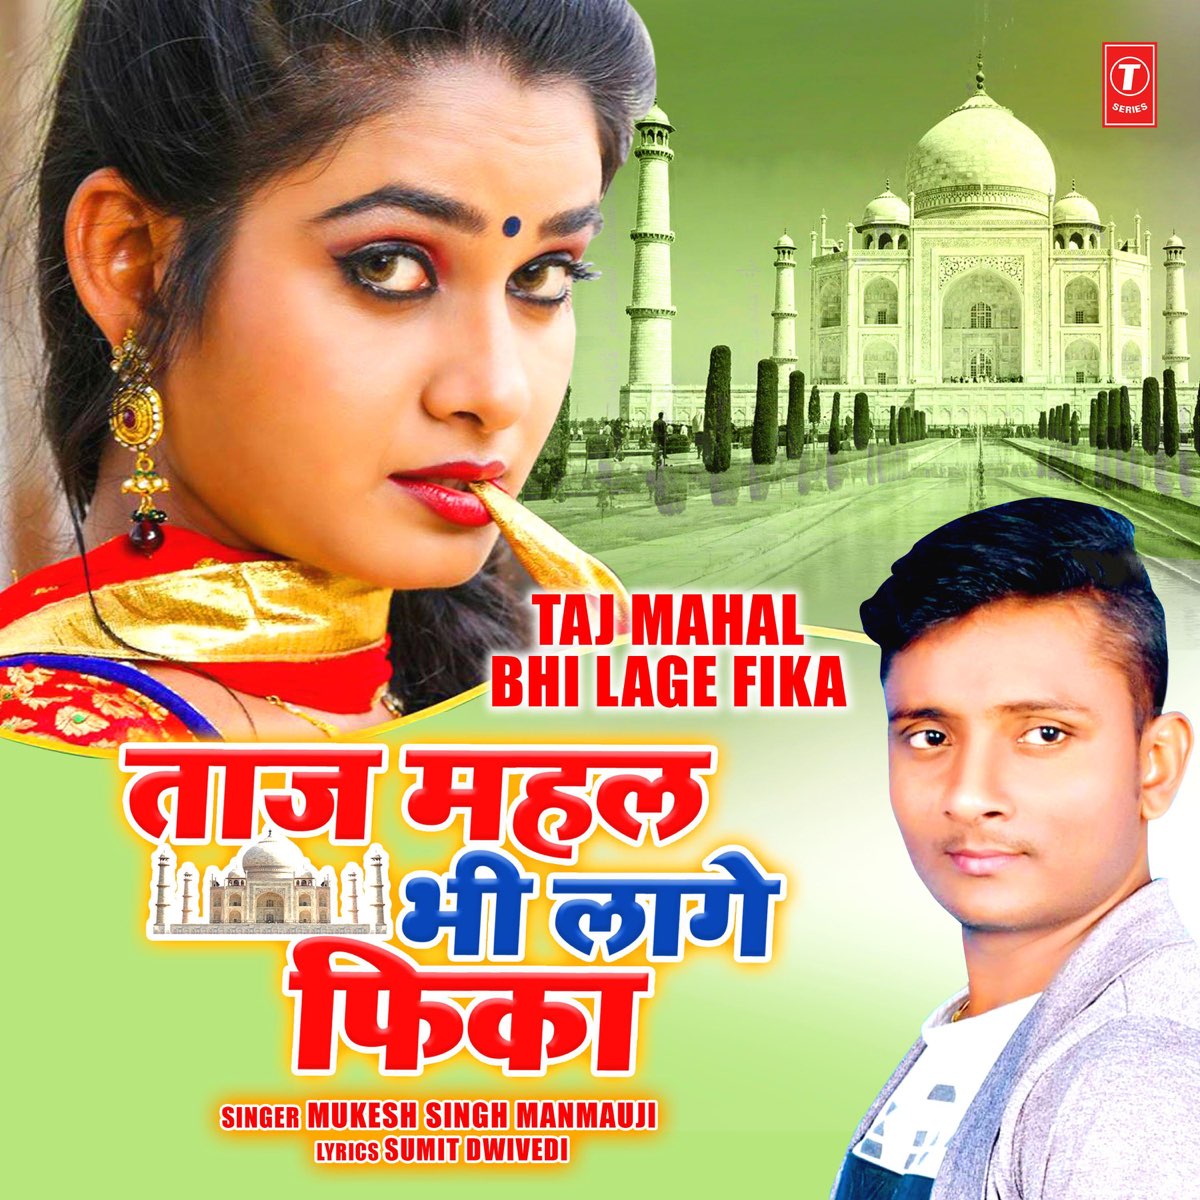 Taj Mahal Bhi Lage Fika - Single by Mukesh Singh Manmauji on Apple Music